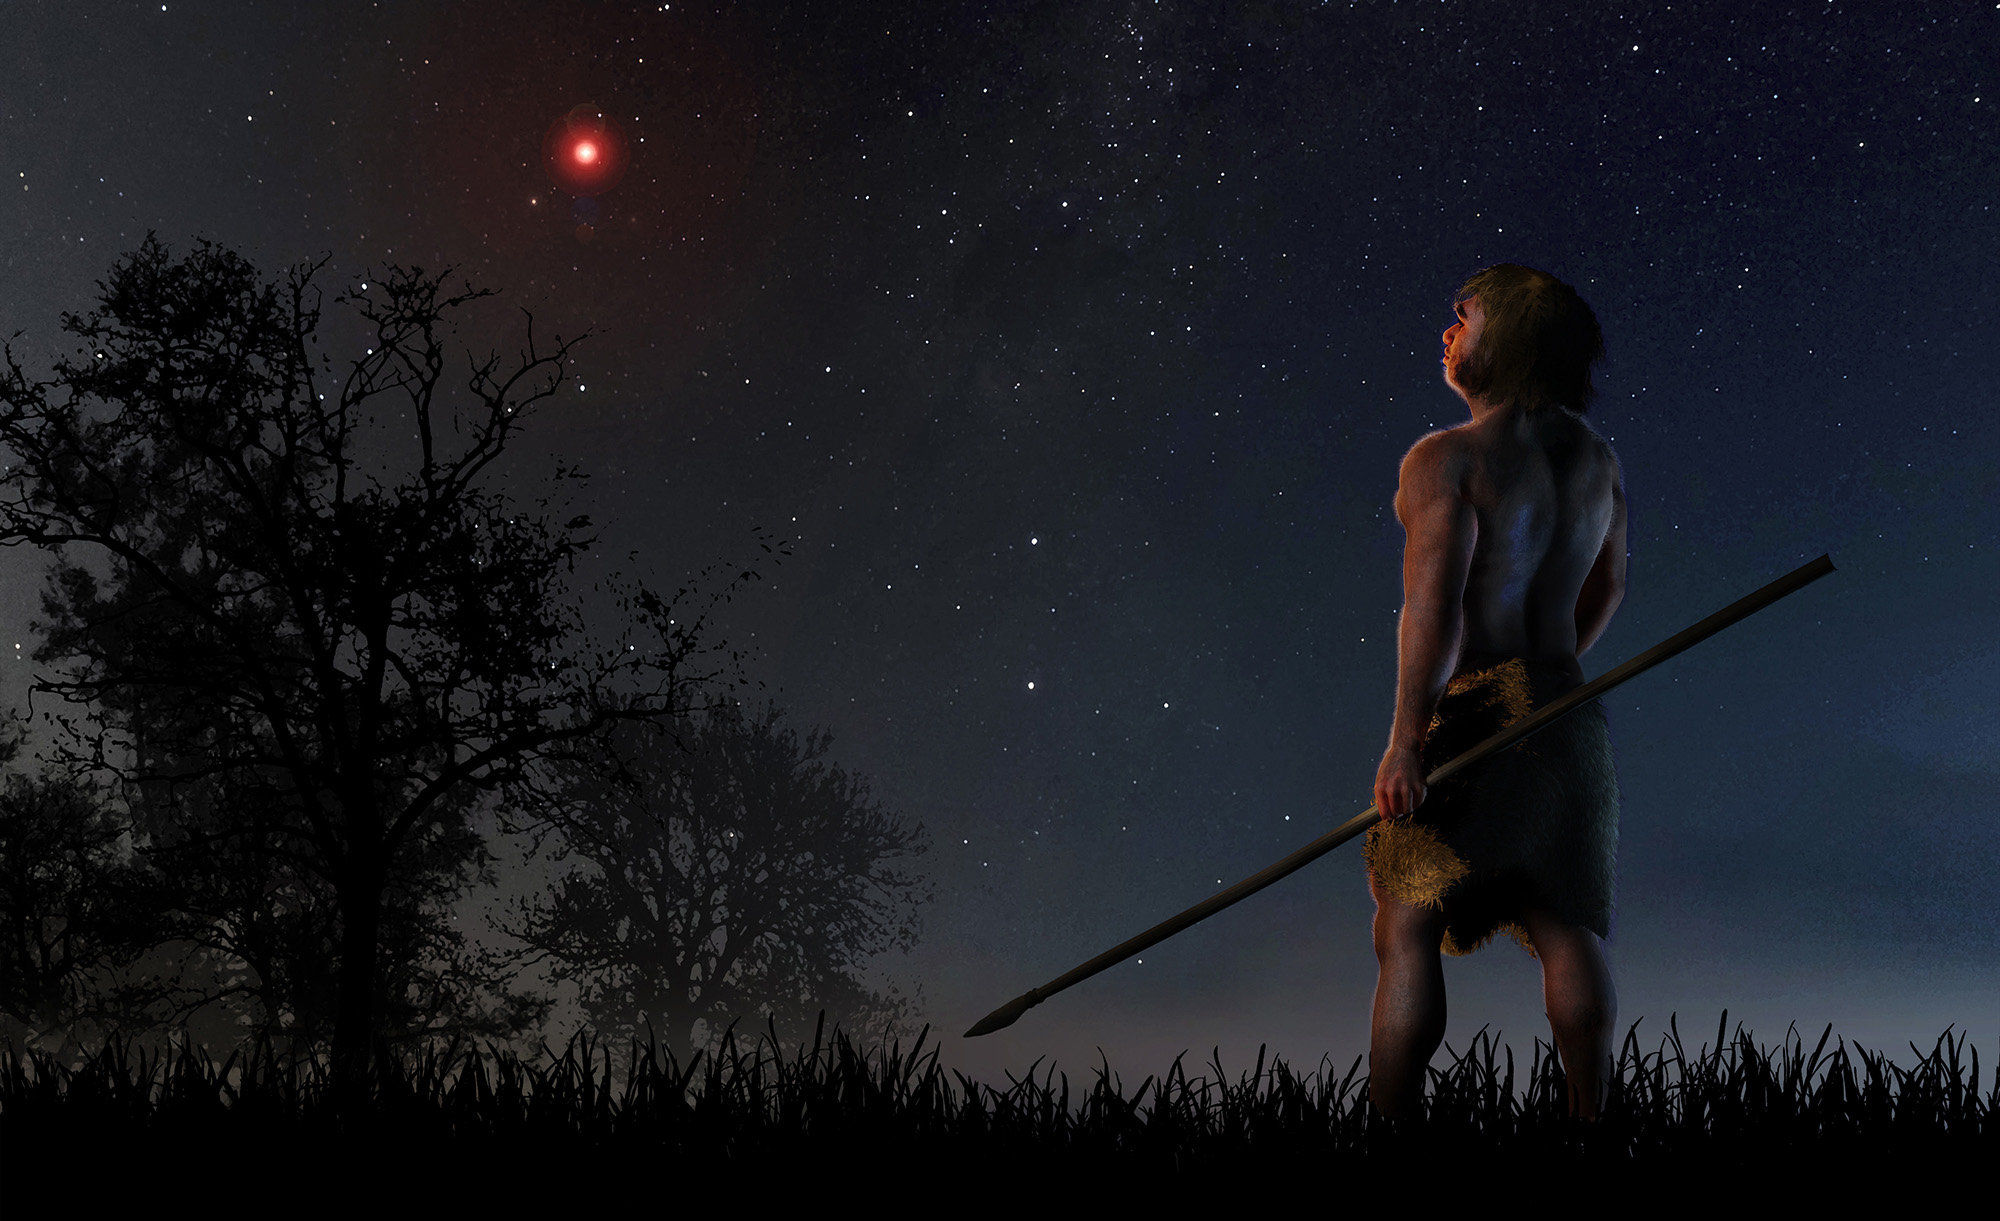 Звезда могла изменить траектории комет Солнечной системы в доисторическую эпоху